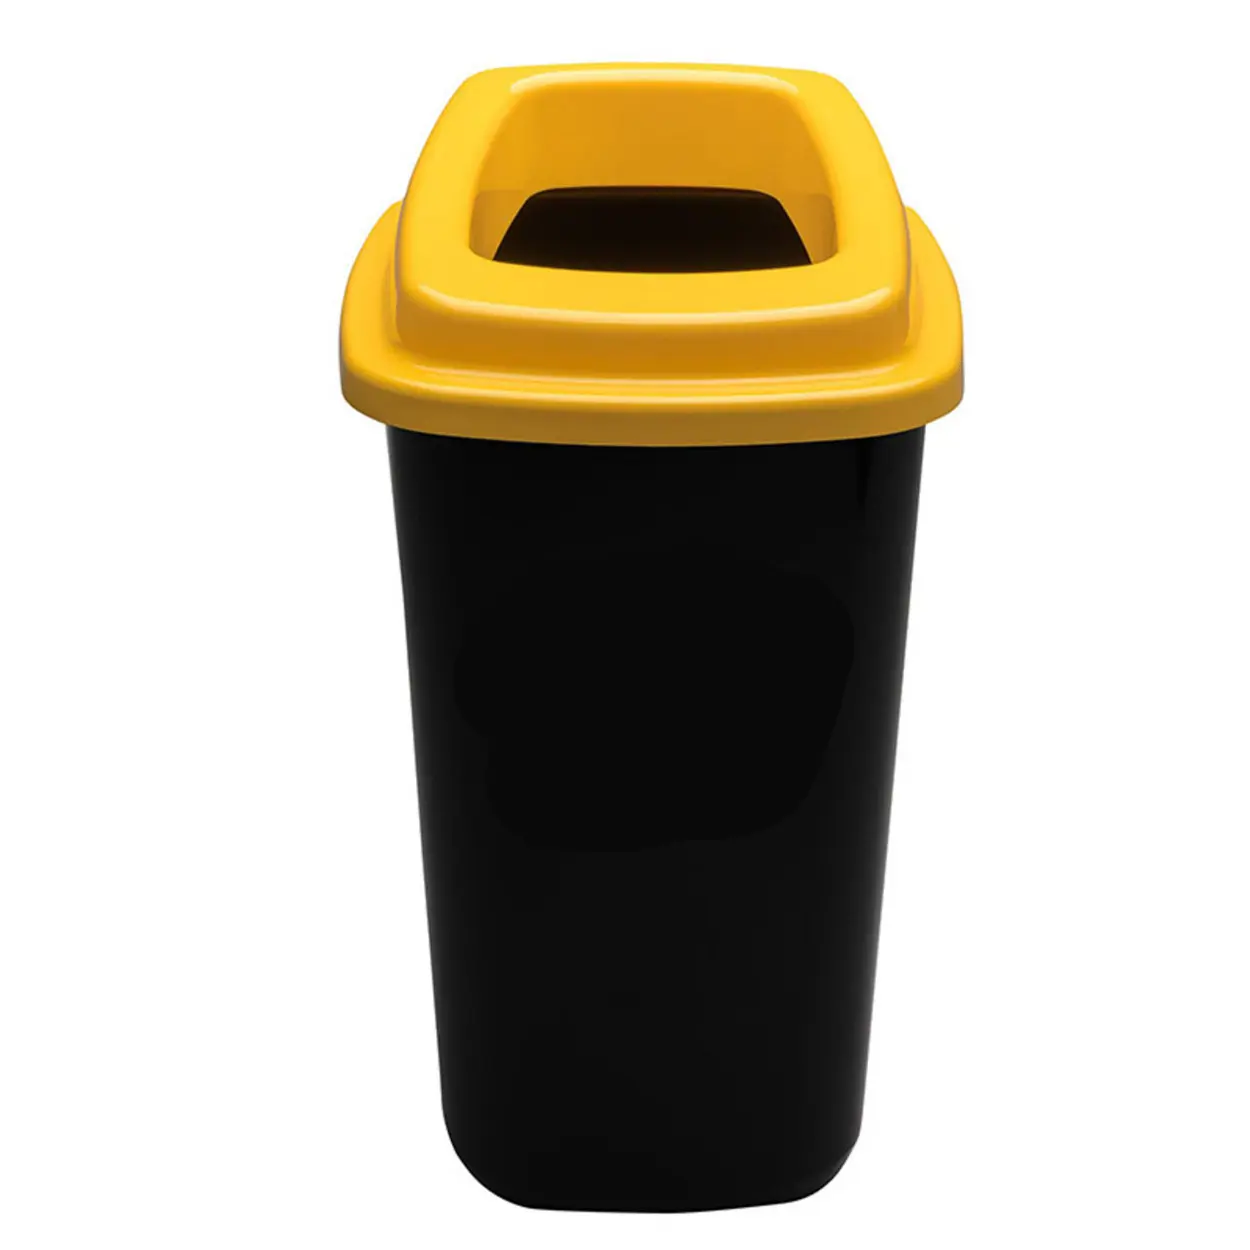 Plastový koš na tříděný odpad, 45 l, žlutá